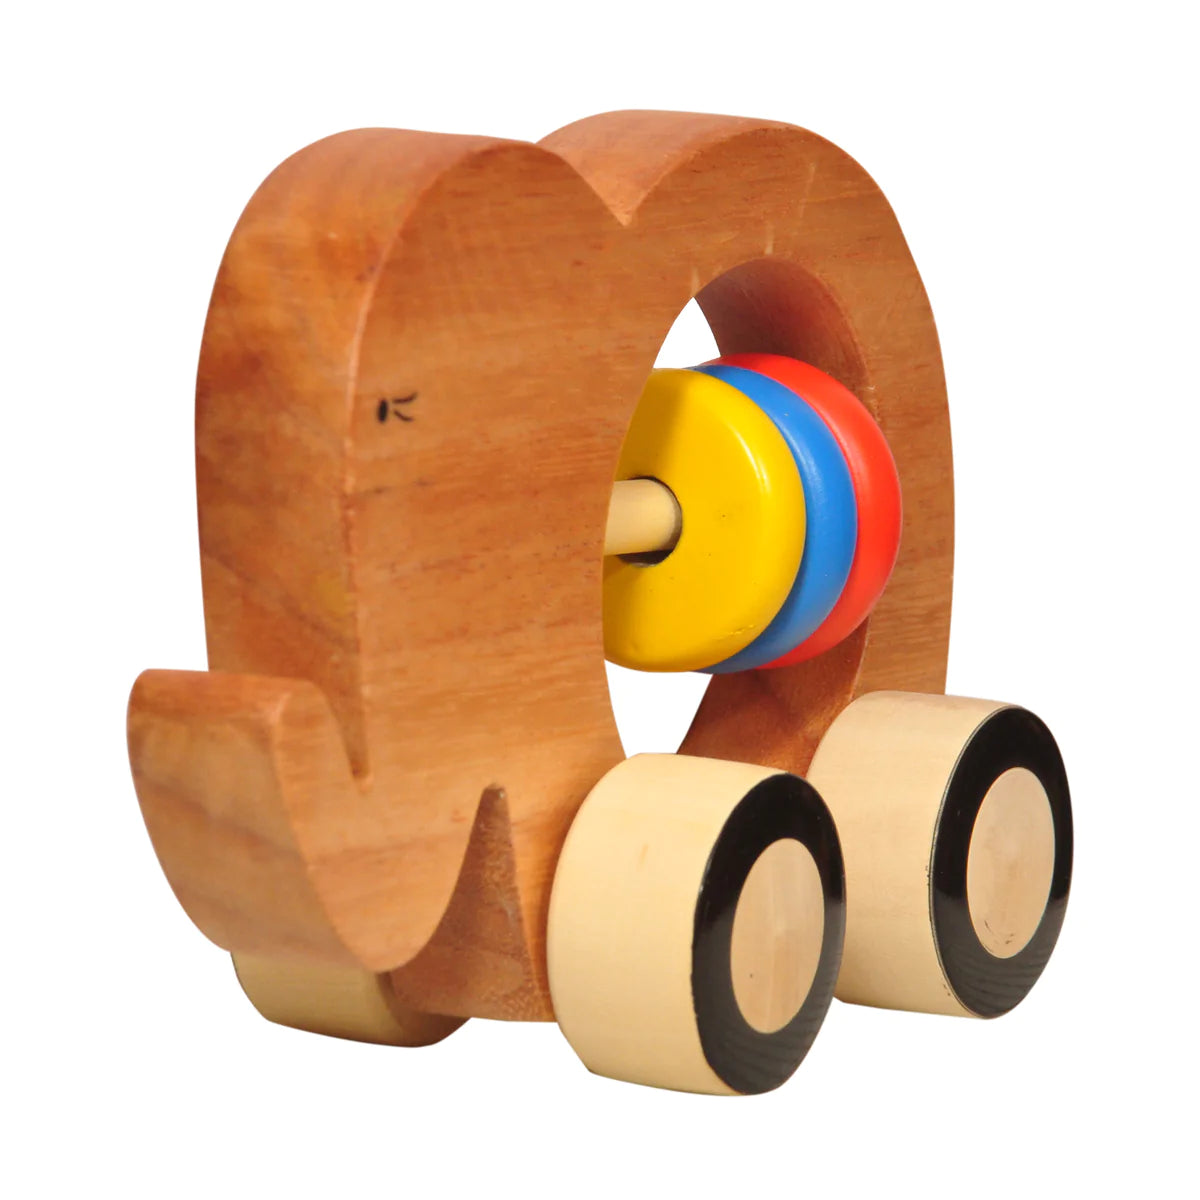 Buy Thasvi Wooden Elephant Push Toy - SkilloToys.com